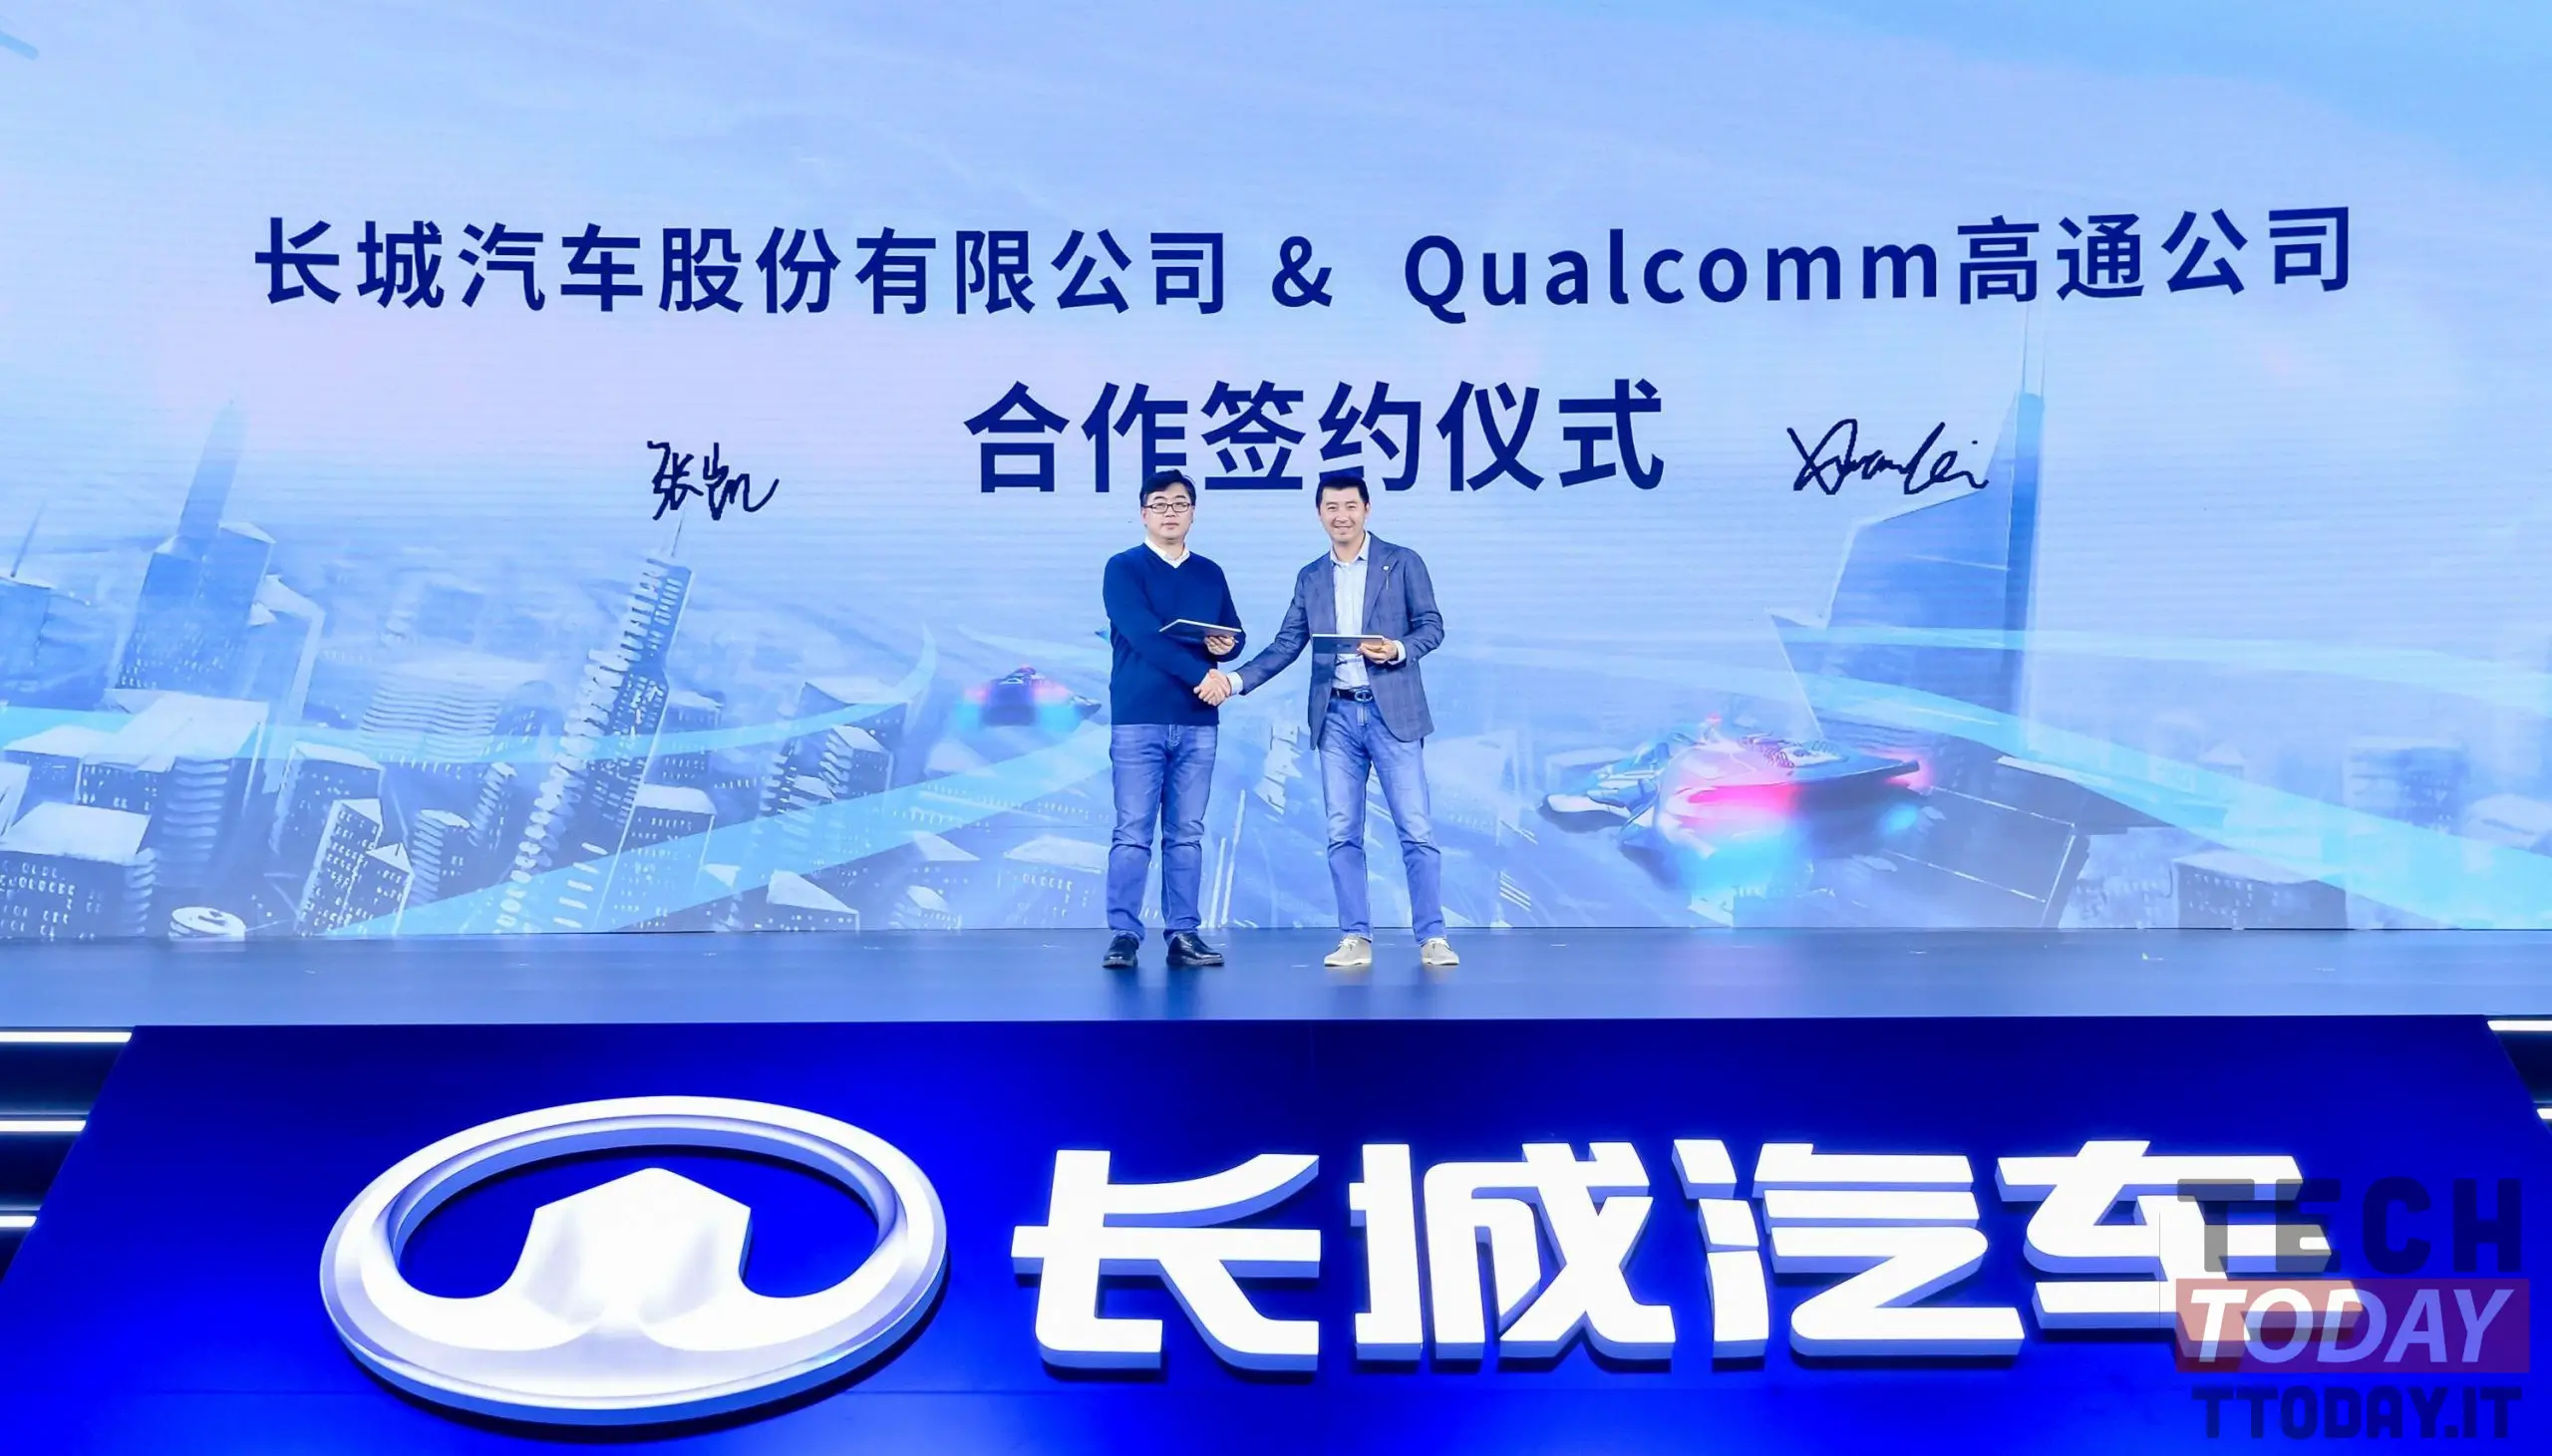 Qualcomm arbeitet mit Great Wall Motors zusammen, um Autos noch intelligenter zu machen